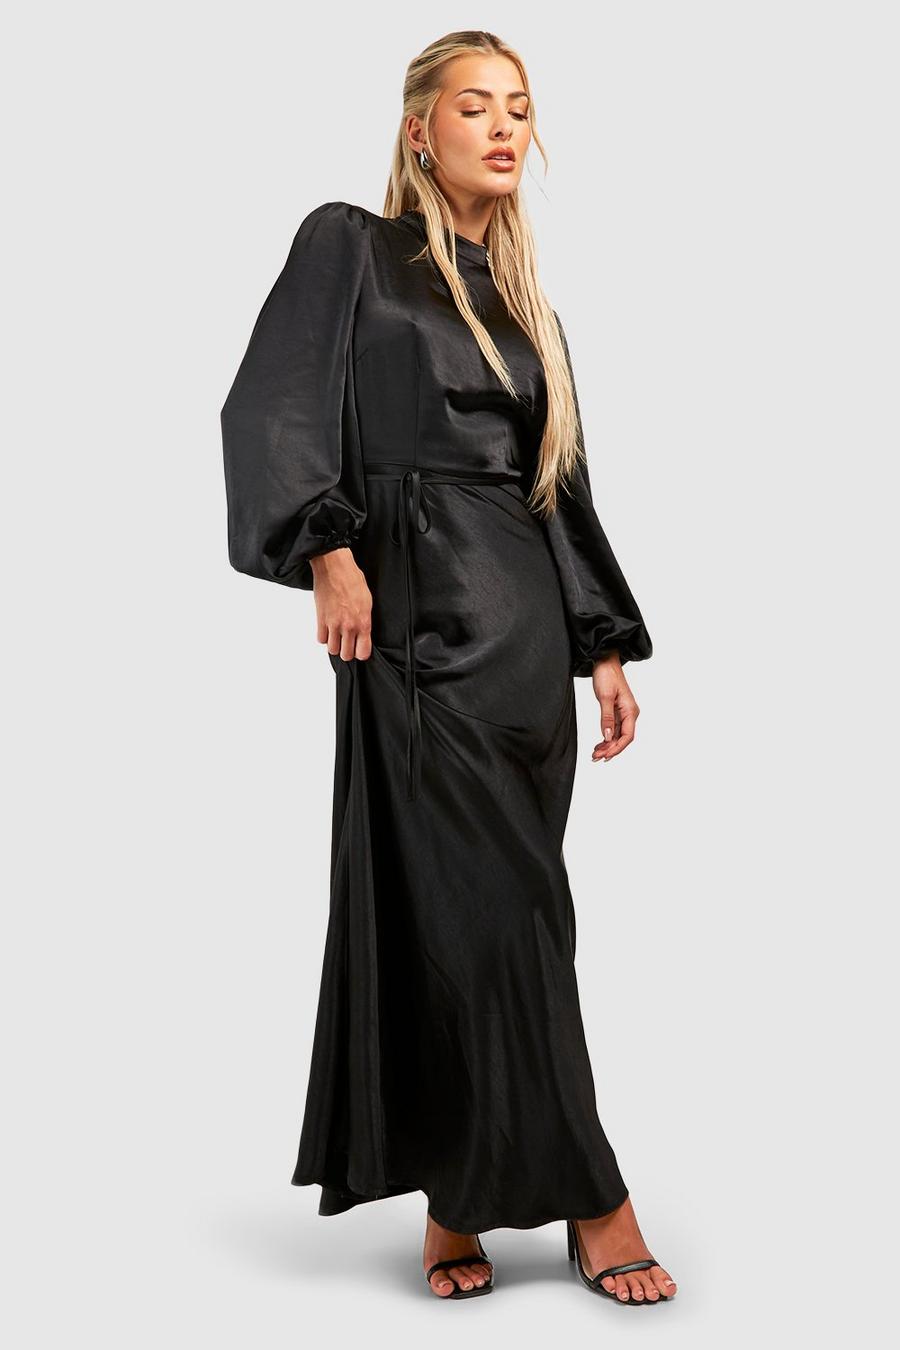 Black Långklänning i satin med hög hals och ballongärm